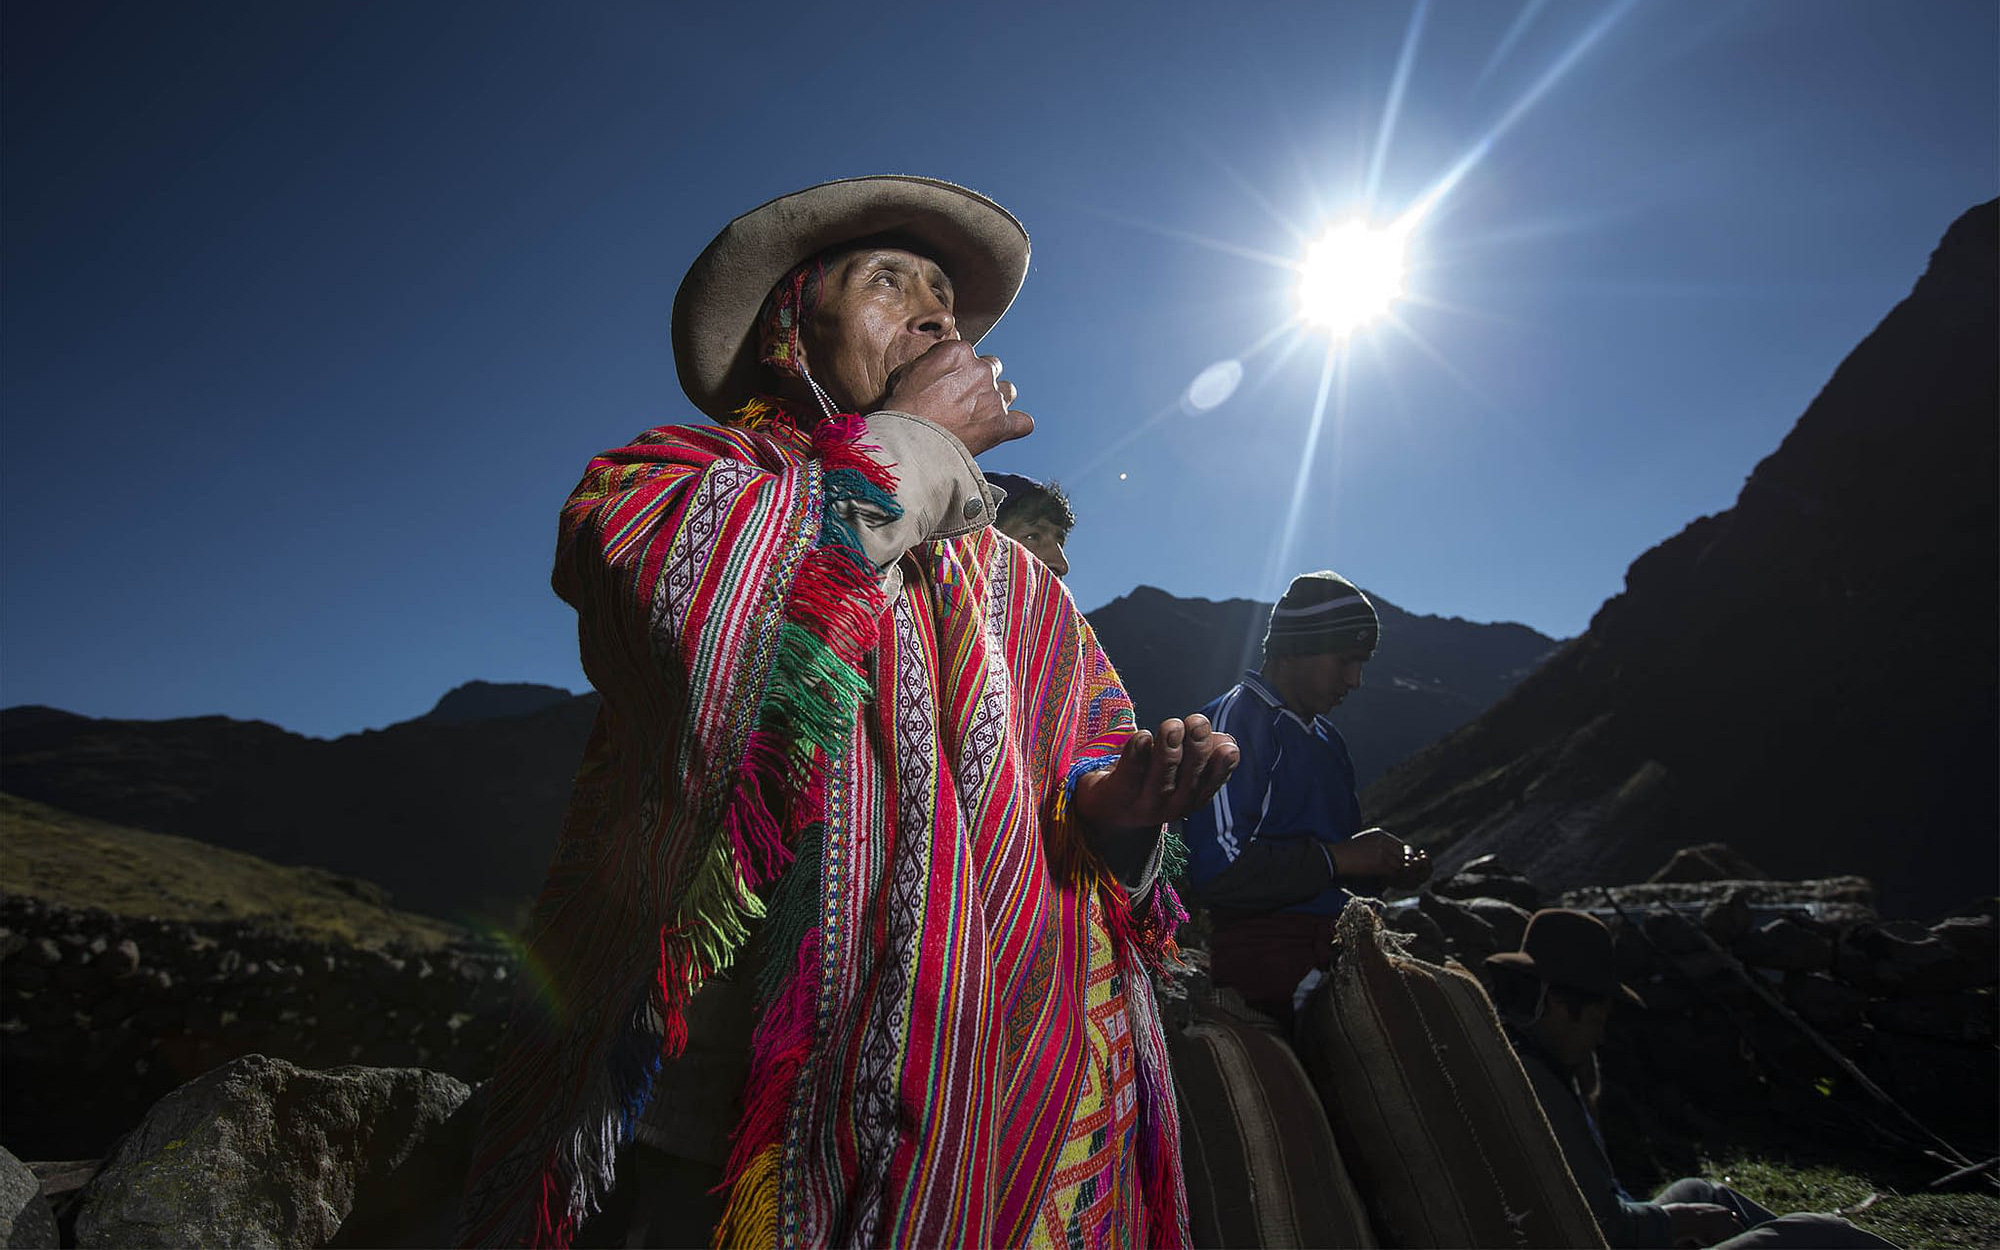 Vua khoai tây - người đàn ông trồng 400 loại khoai tây ở dãy núi Andes